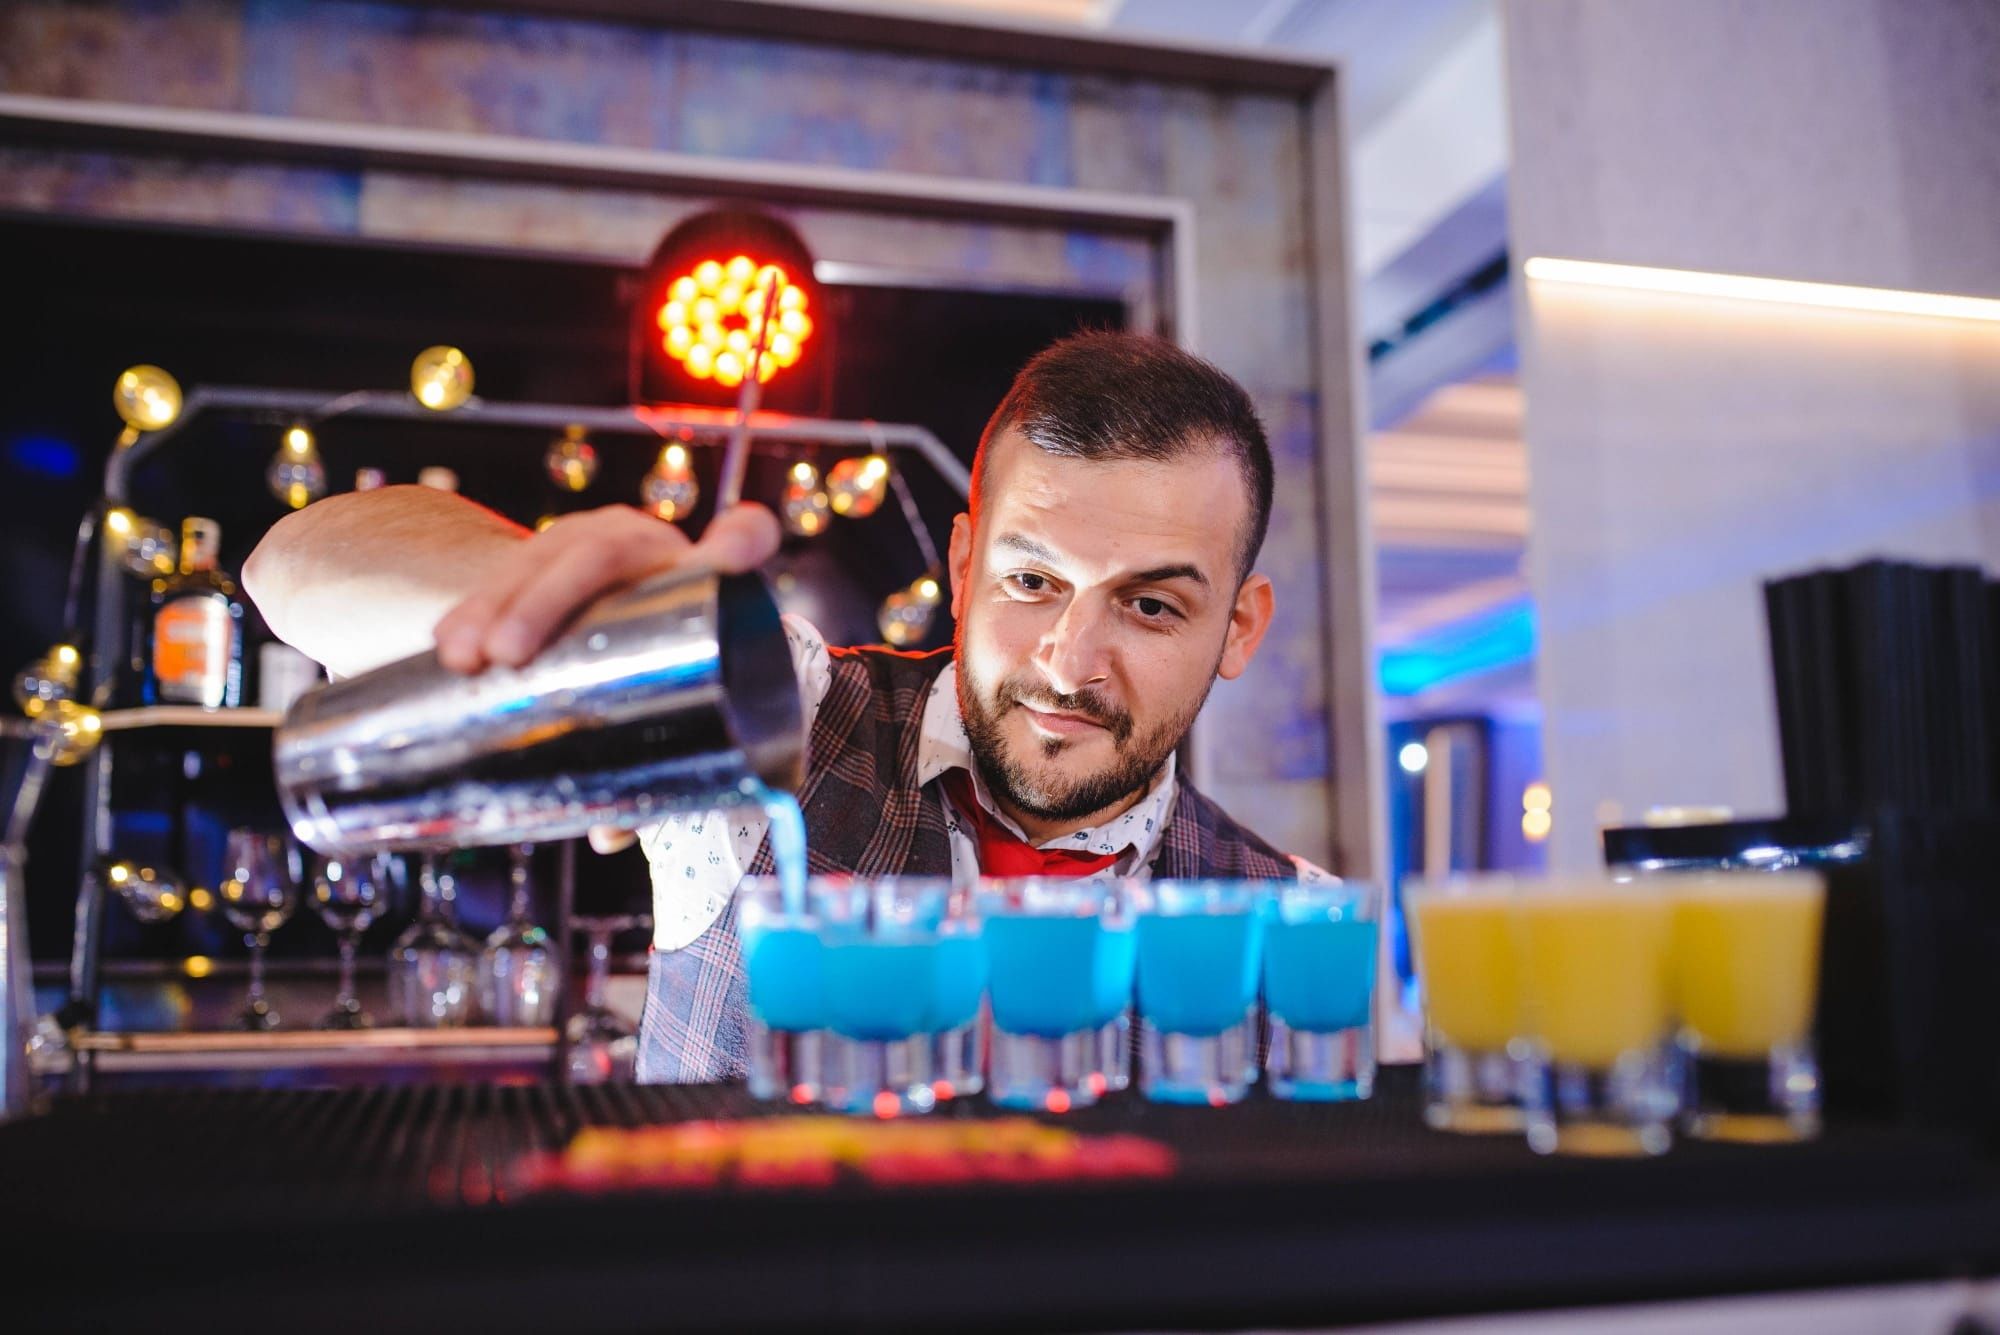 Cocktail bar mobil barman evenimente valcea nunti, corporate, botezuri